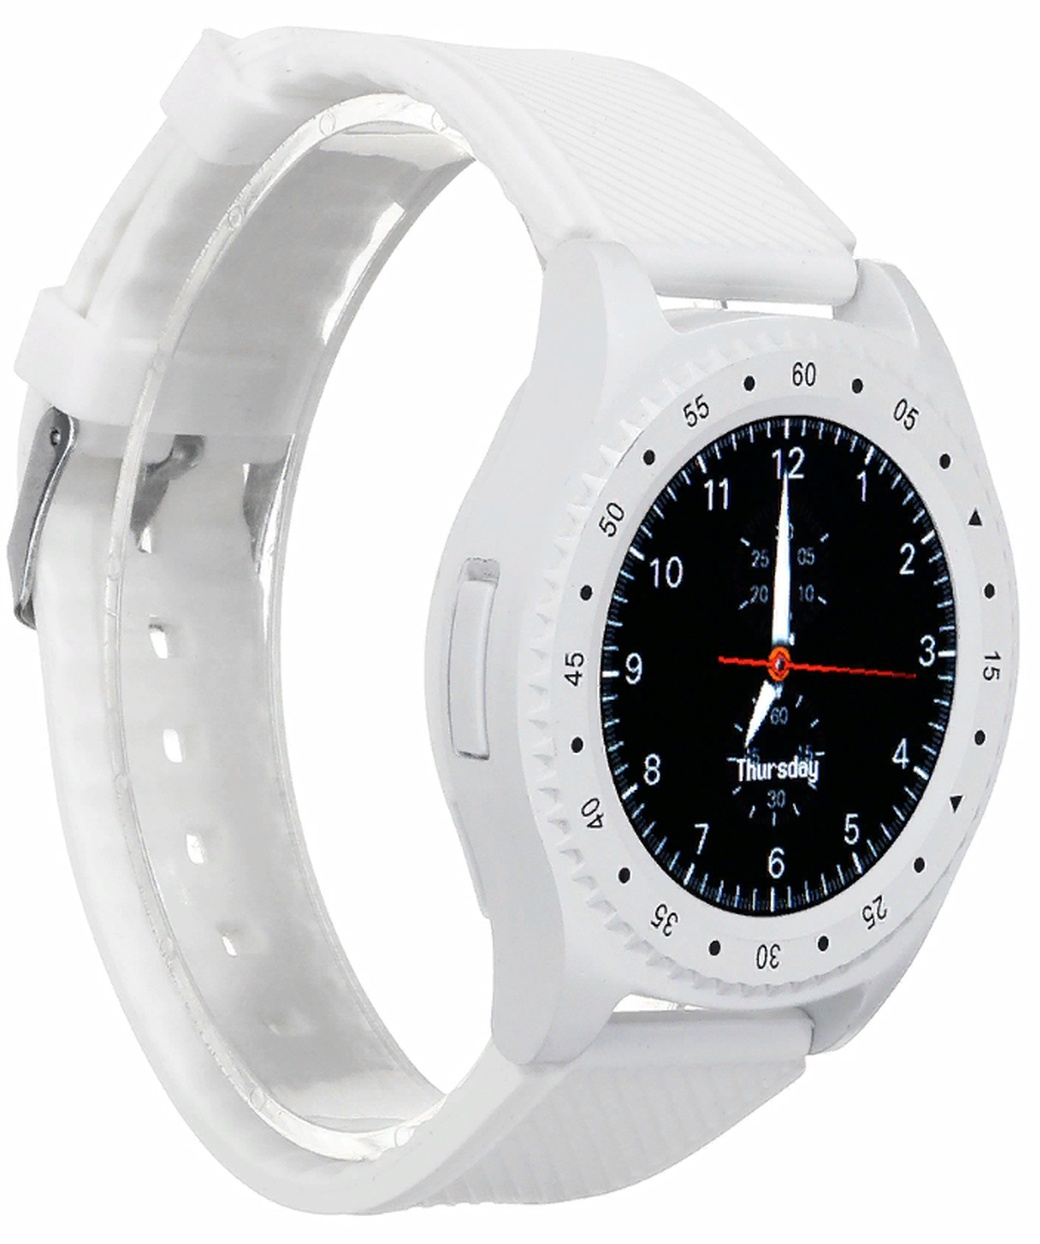 Умные часы Bakeey L9, Android, белый фото